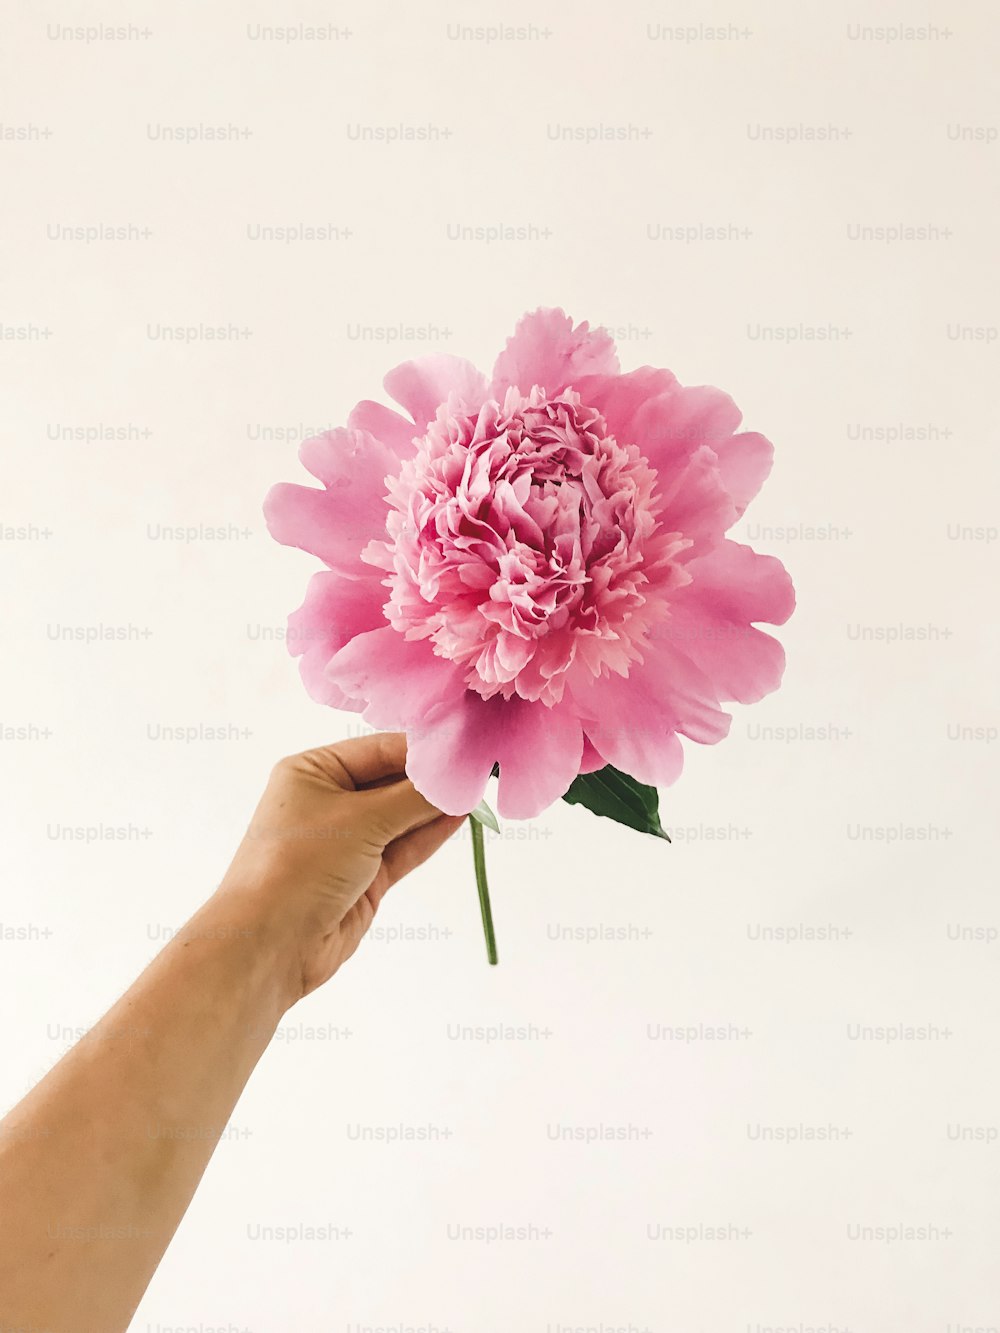 흰색 바탕에 큰 분홍색 모란 꽃을 들고 있는 손. 축하를 위해 꽃 장식을 준비하는 꽃집. 안녕하세요 봄 개념